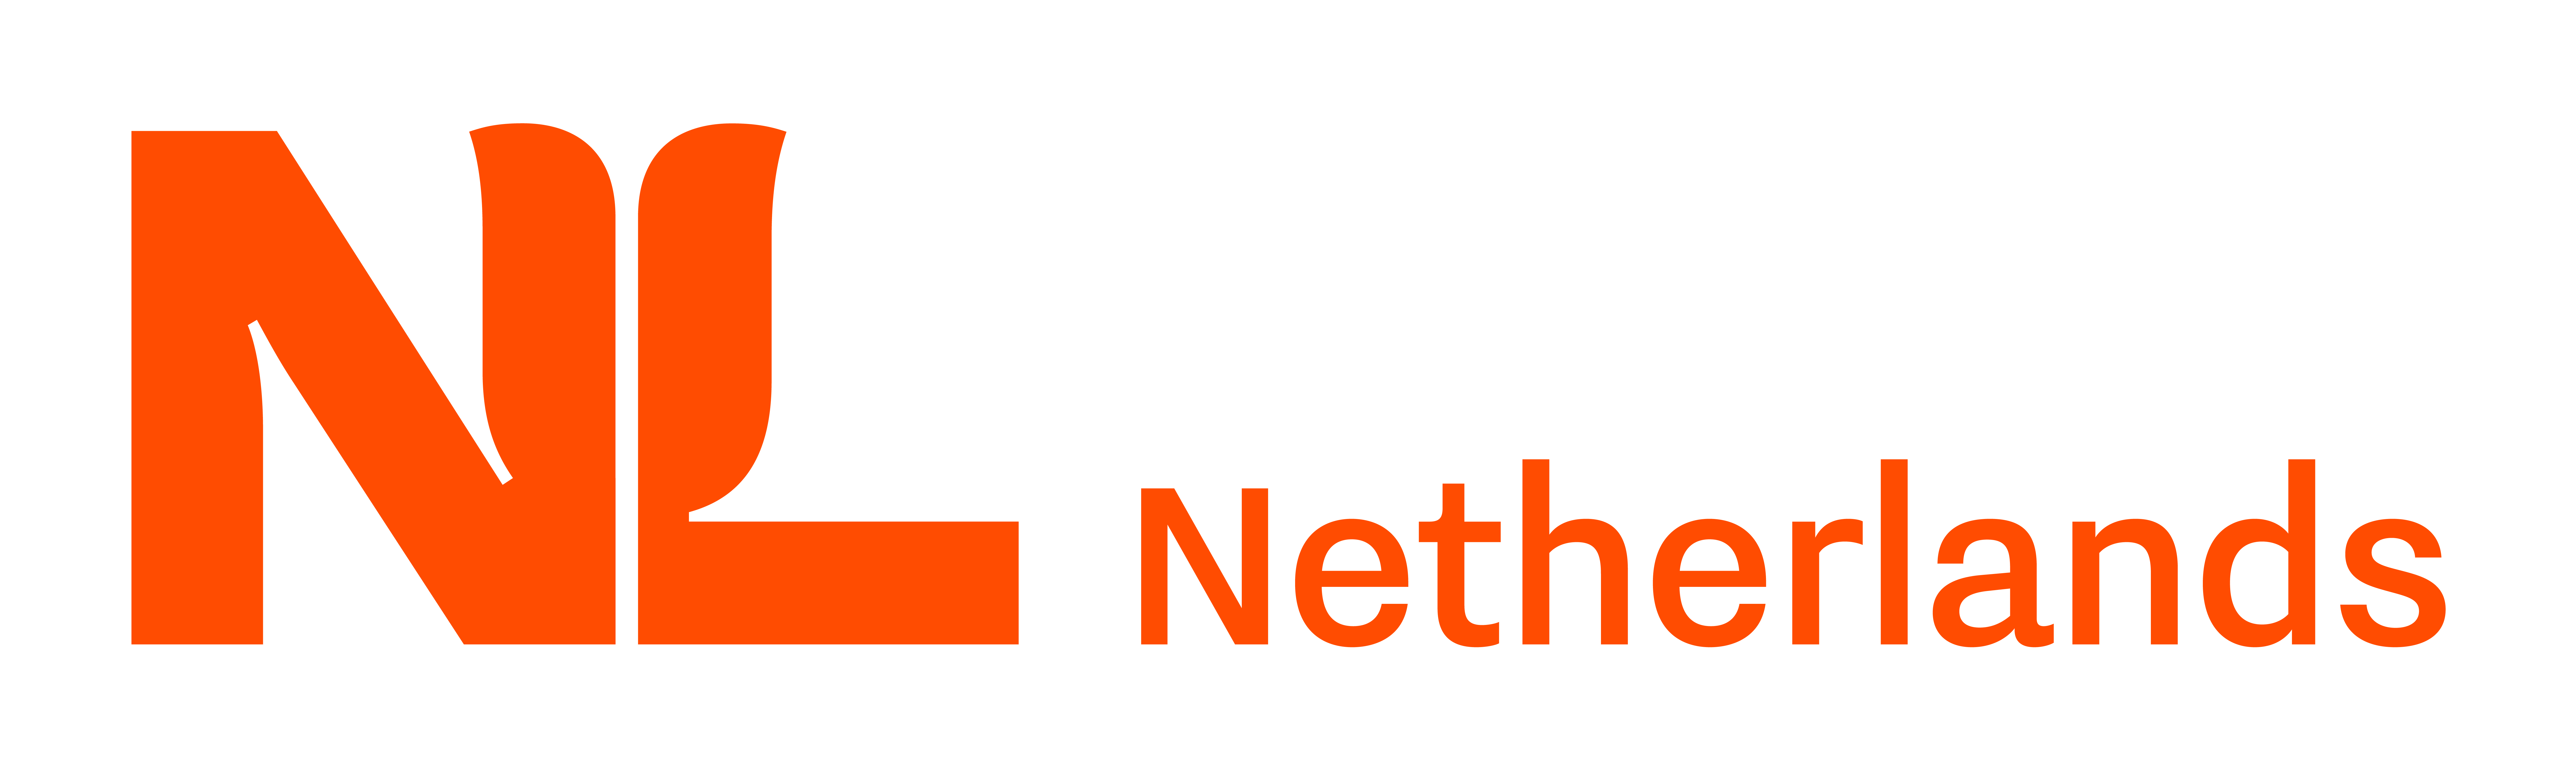 NL_Branding_Netherlands_01_CMYK_FC_1200DPI